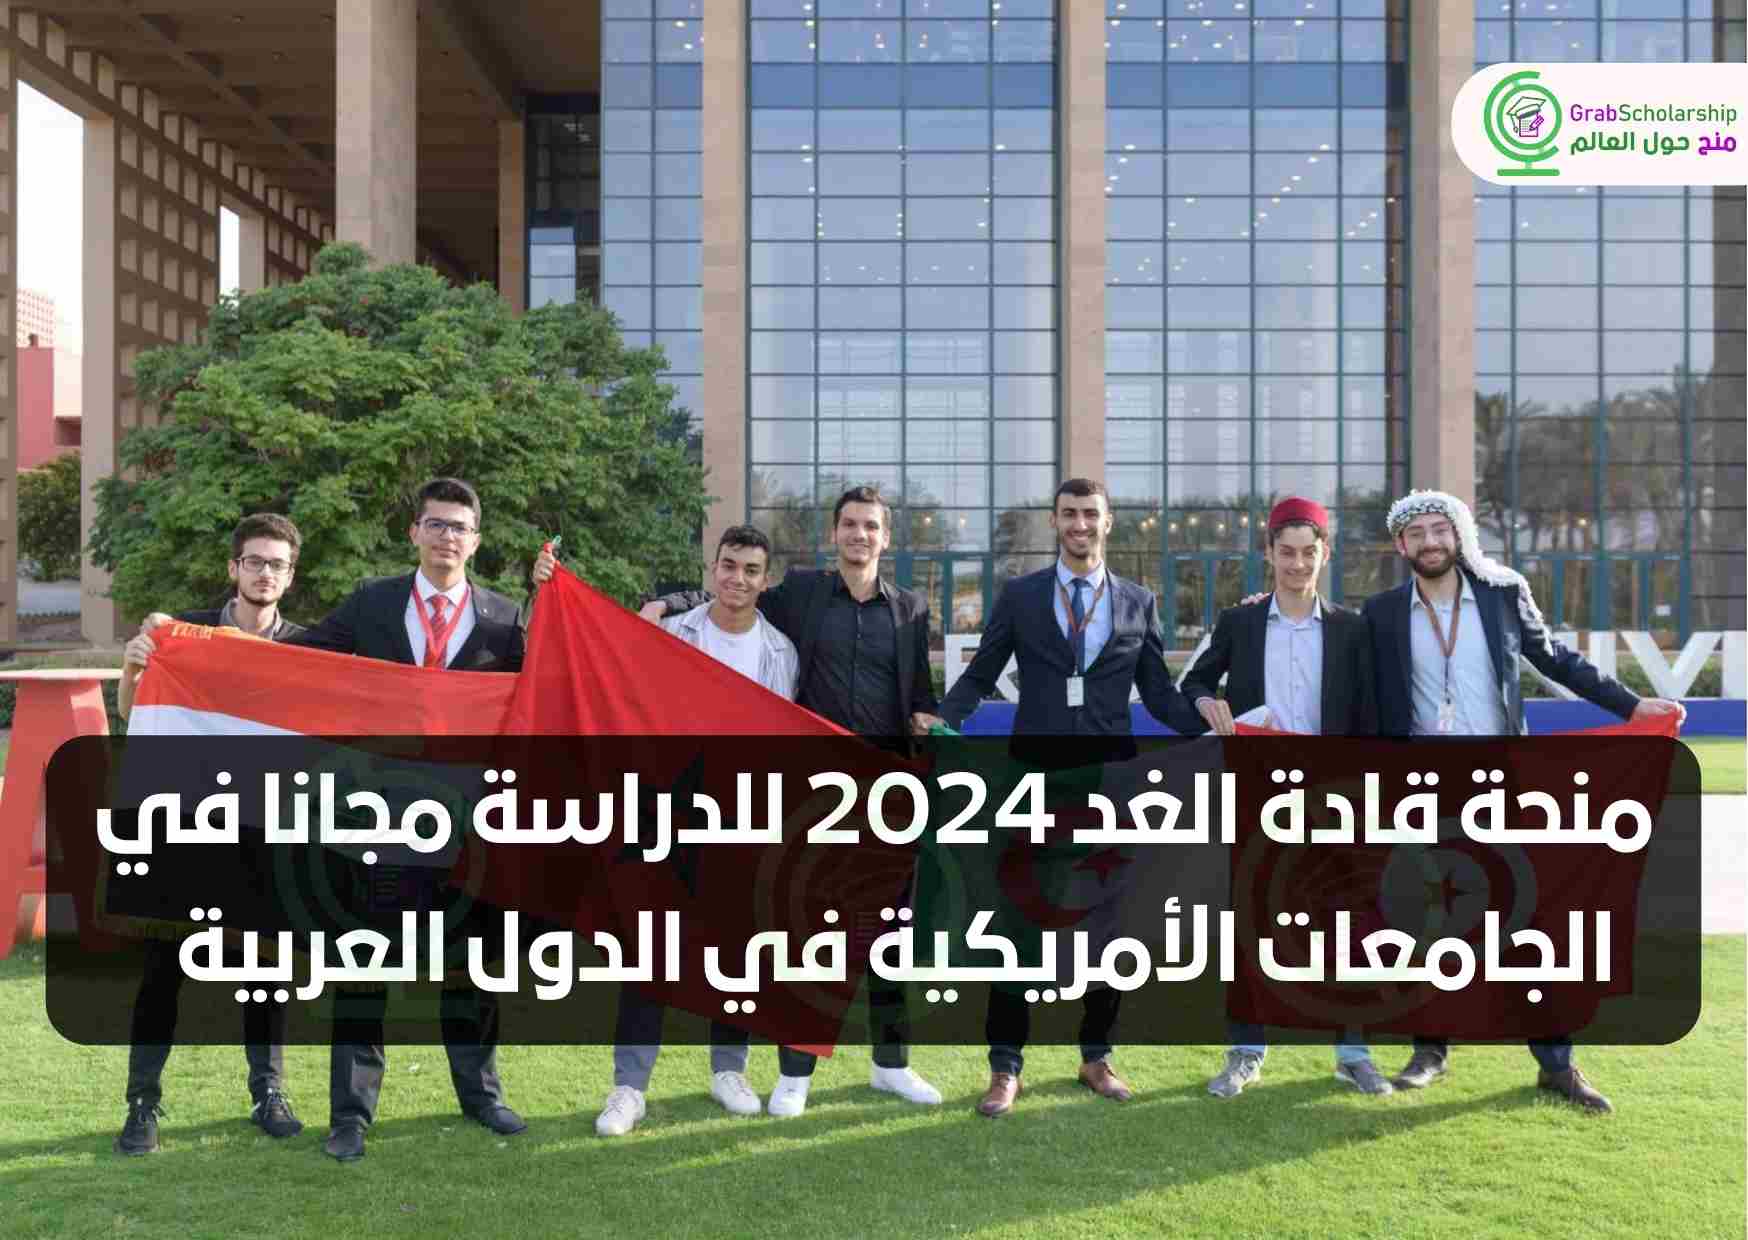 منحة قادة الغد 2024 للدراسة مجانا في الجامعات الأمريكية في الدول العربية